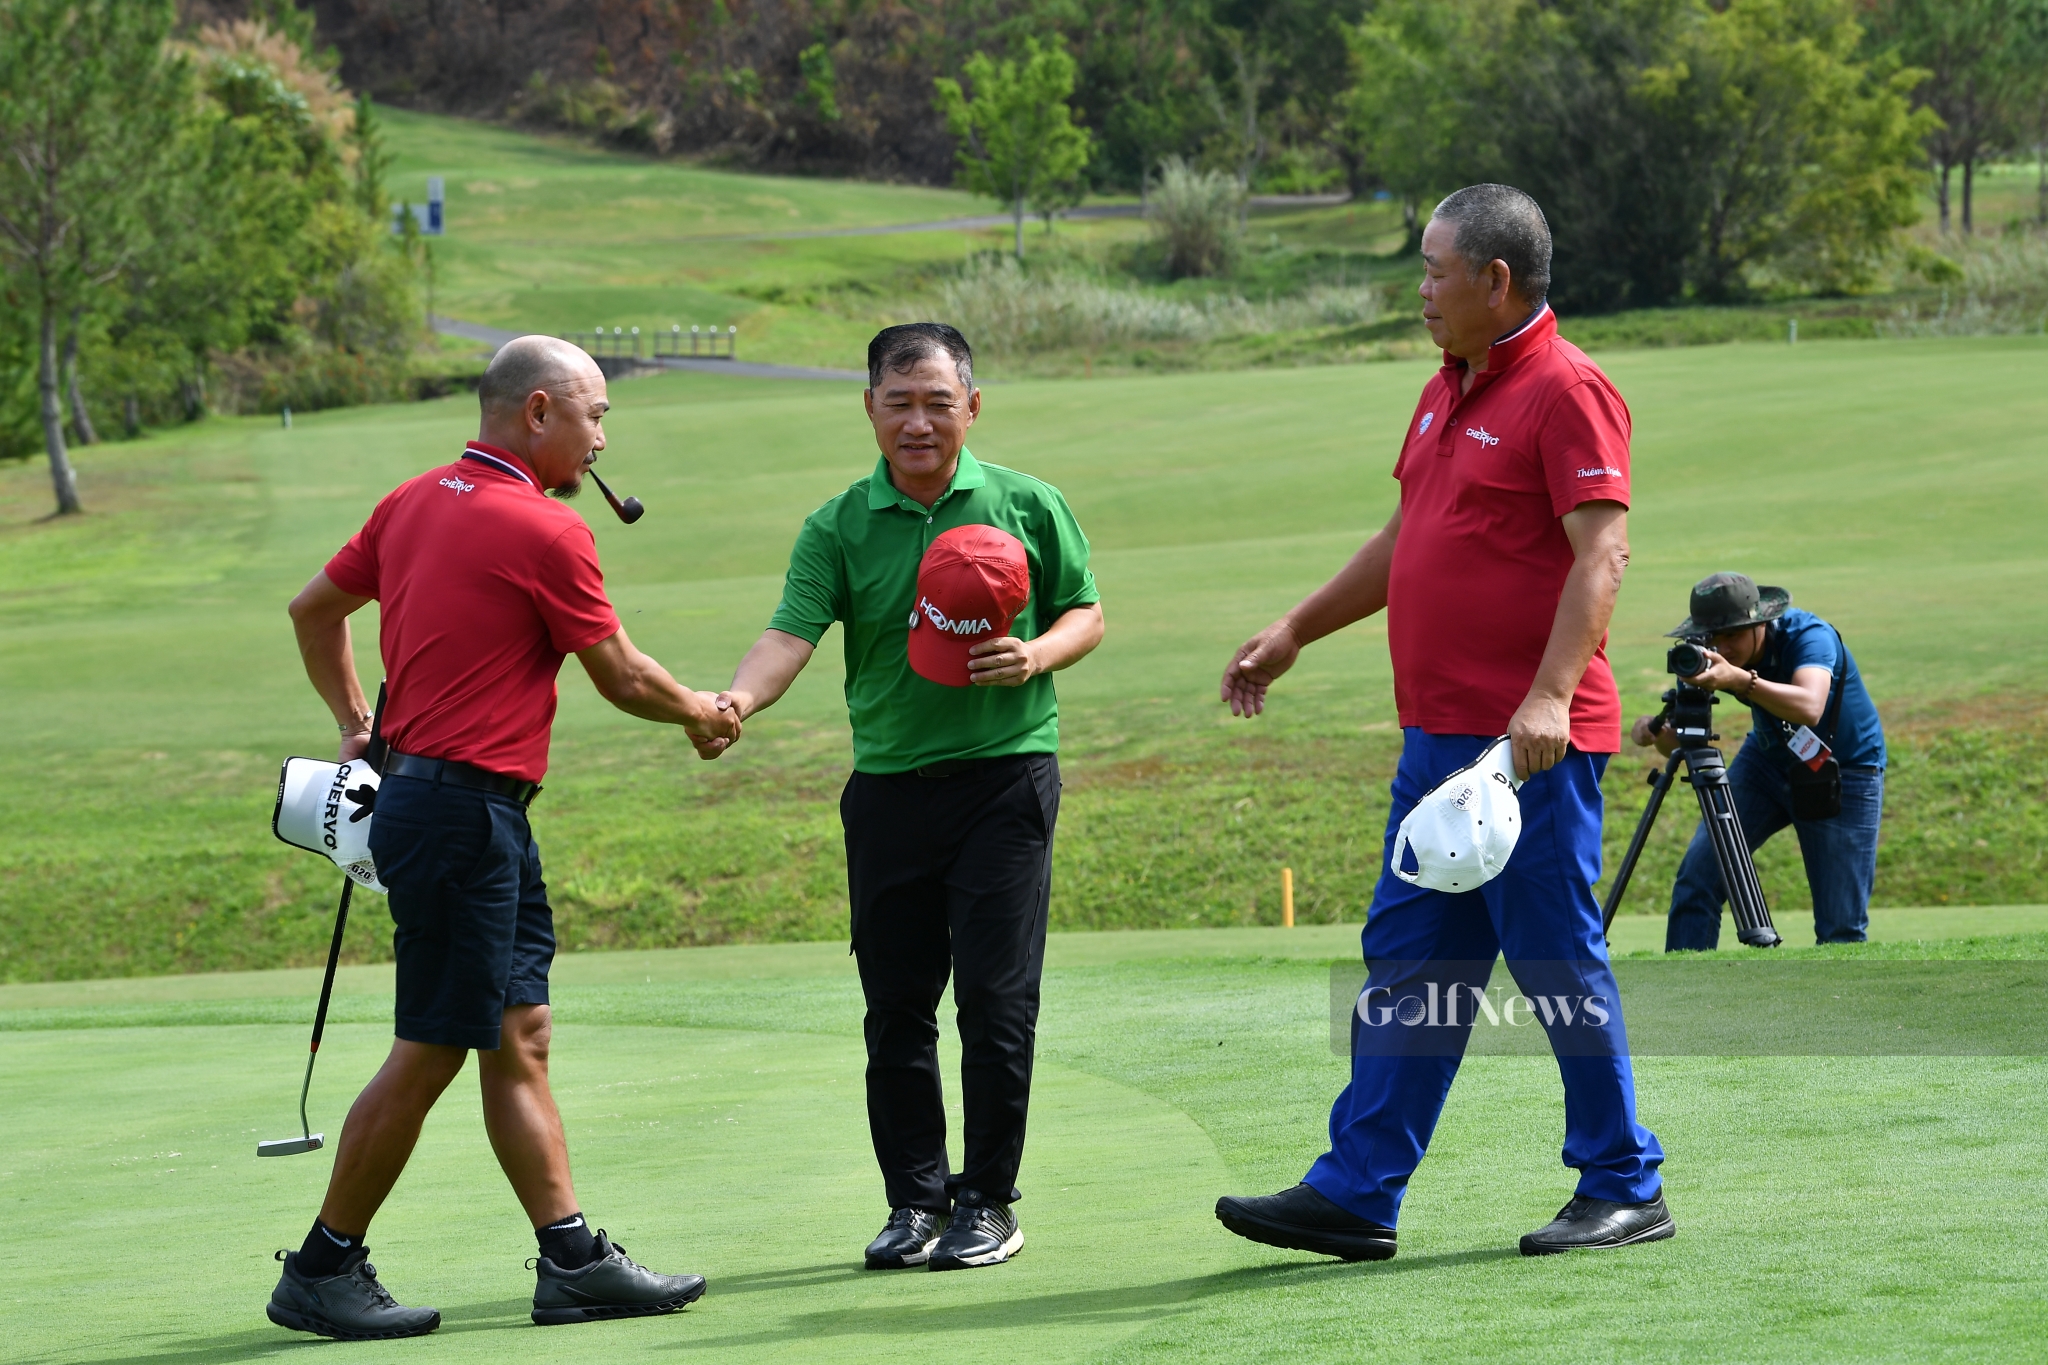 Những dấu ấn đặc biệt tại giải Vô địch golf Trung niên Quốc gia 2021 tranh cúp Vietnam Airlines.